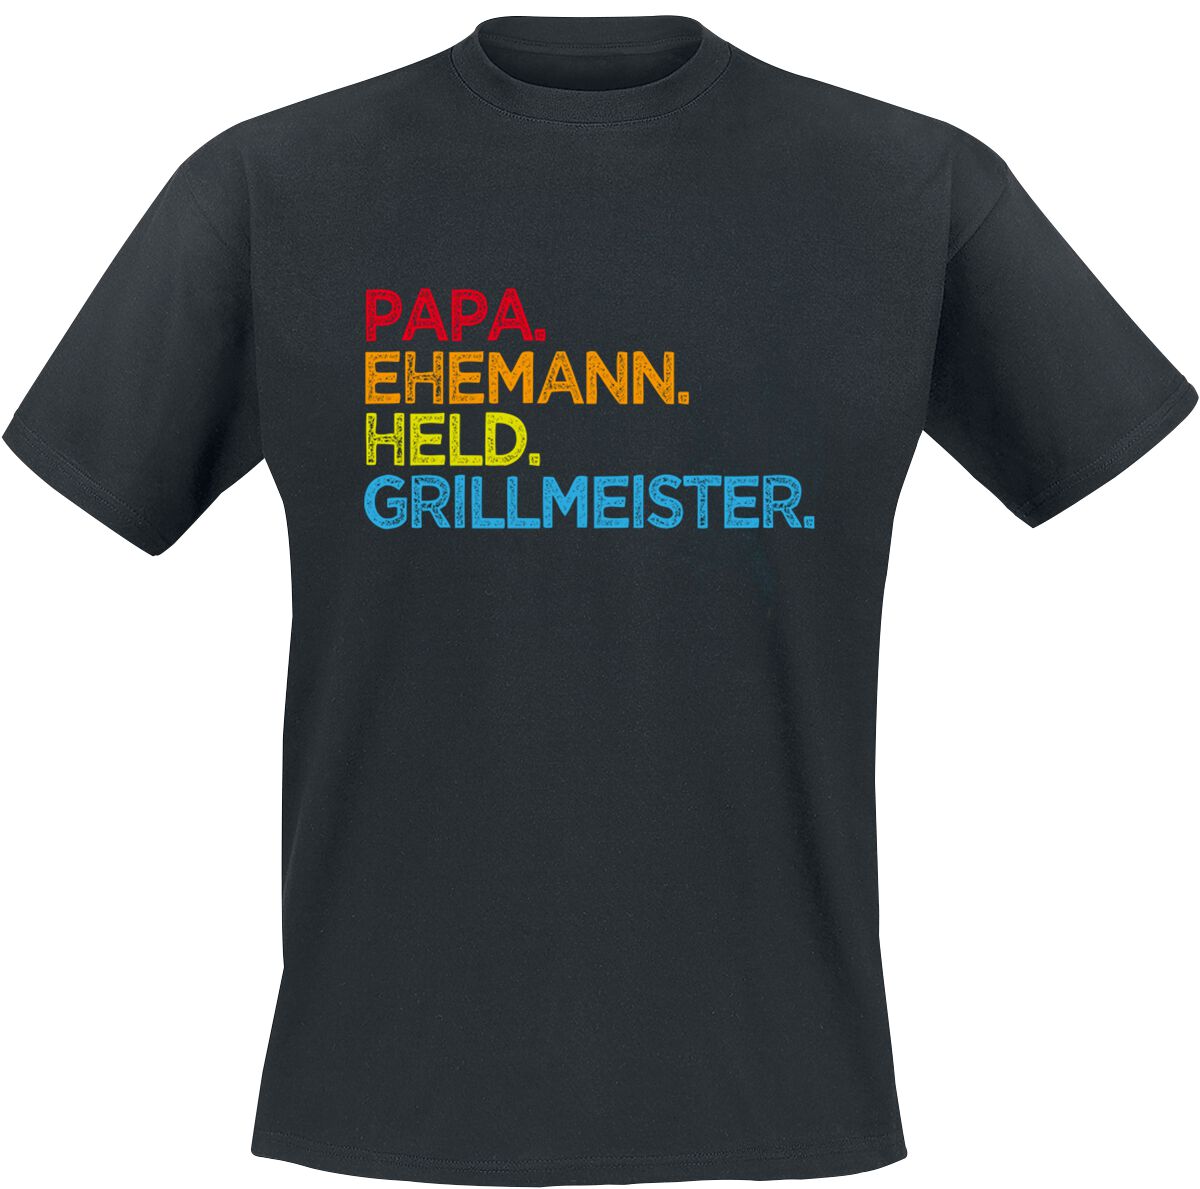 Familie & Freunde T-Shirt - Papa. Ehemann. Held. Grillmeister - S bis 5XL - für Männer - Größe M - schwarz